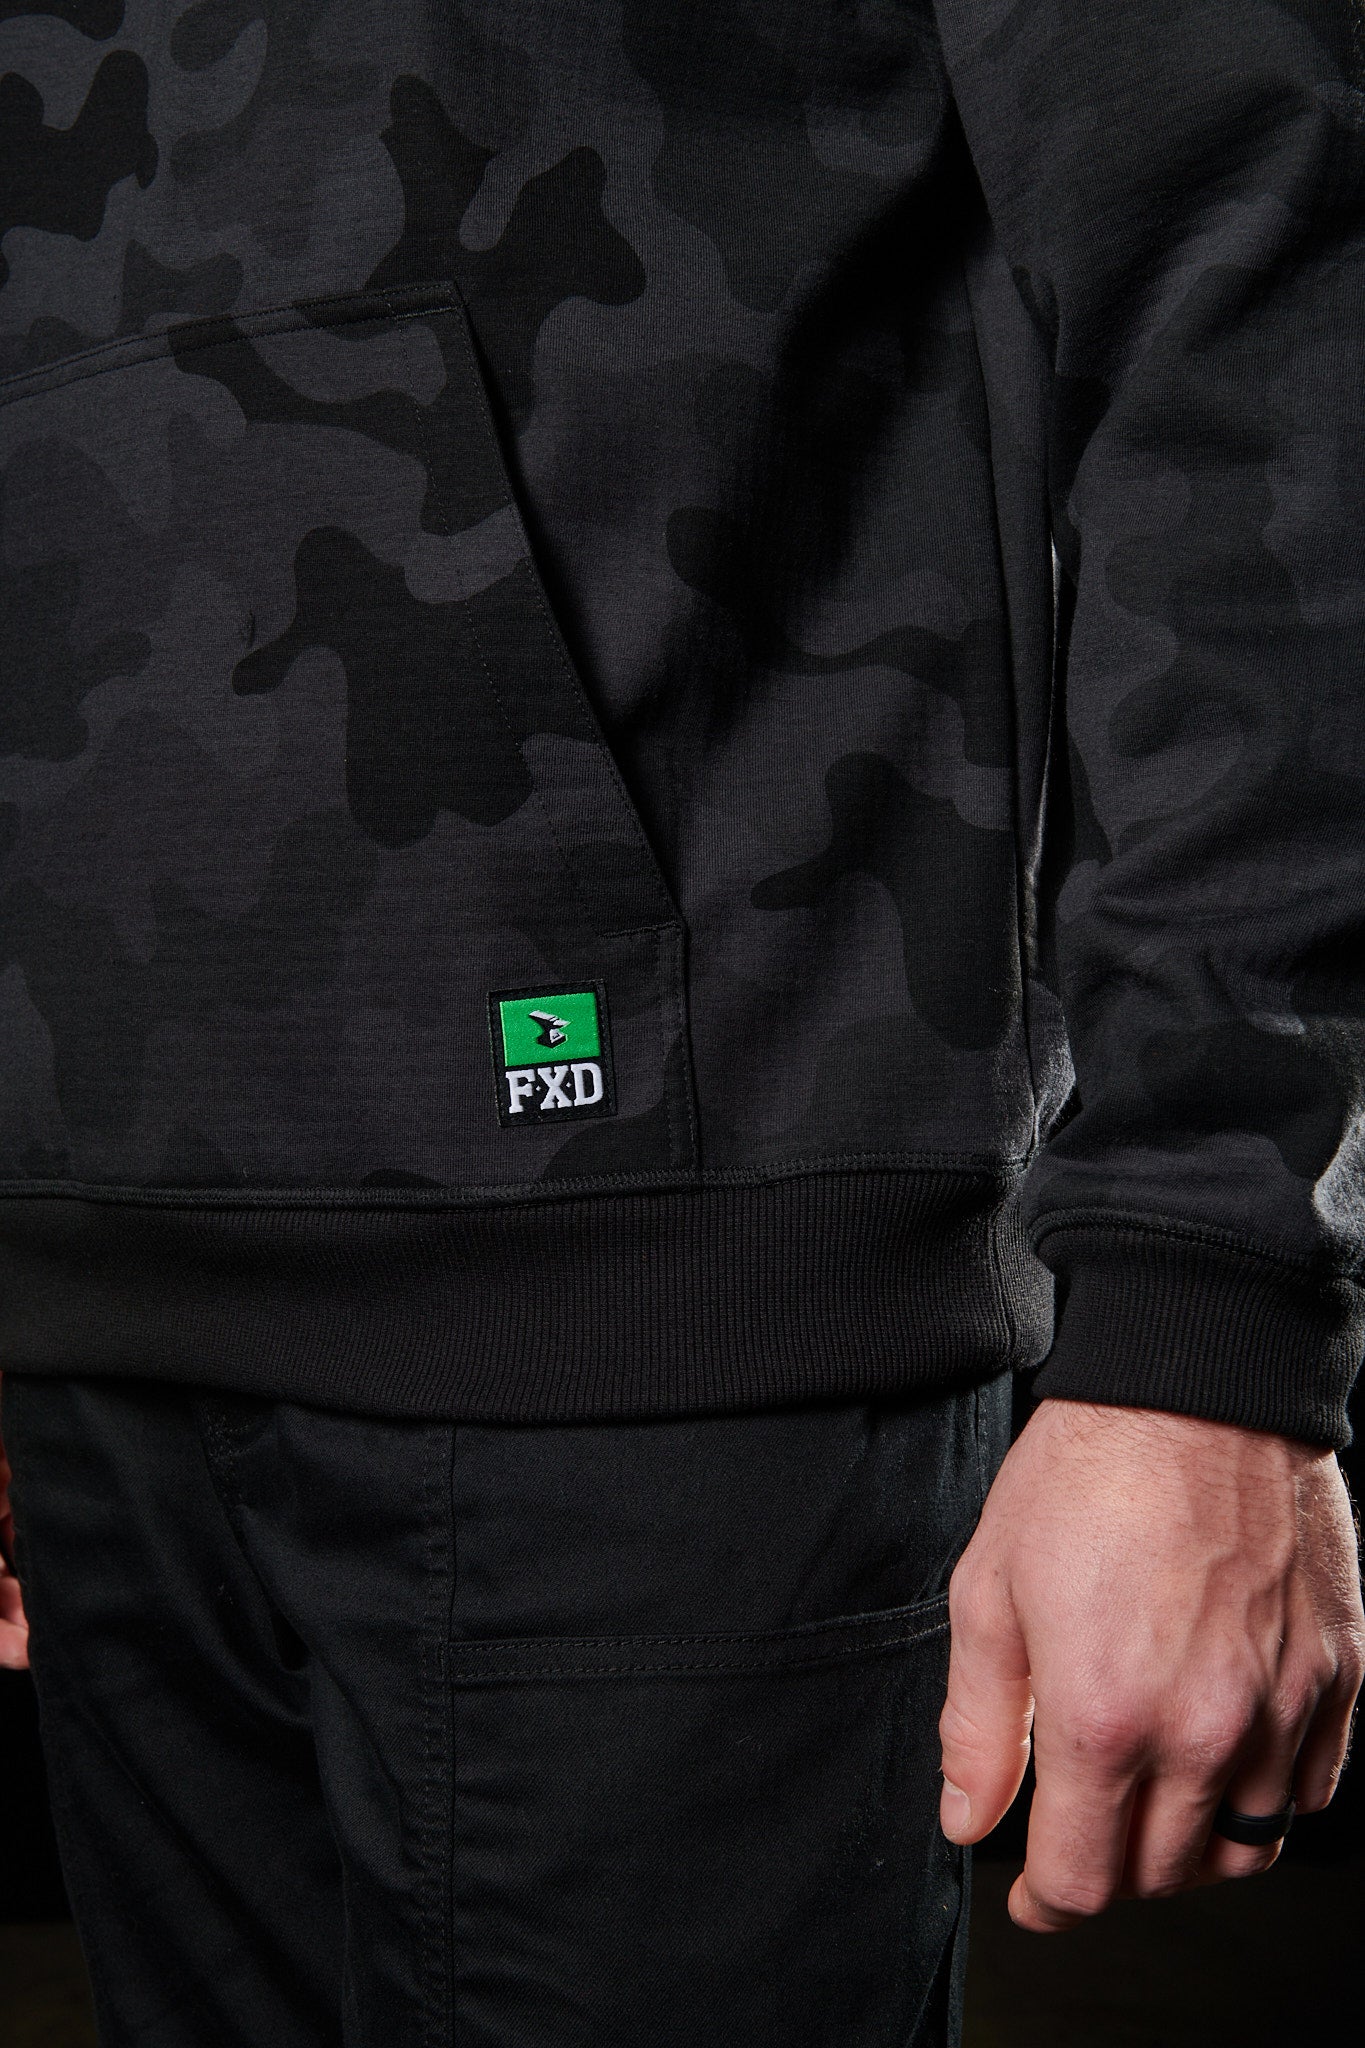 Pocket detailing of the WF◆1 Black Camo